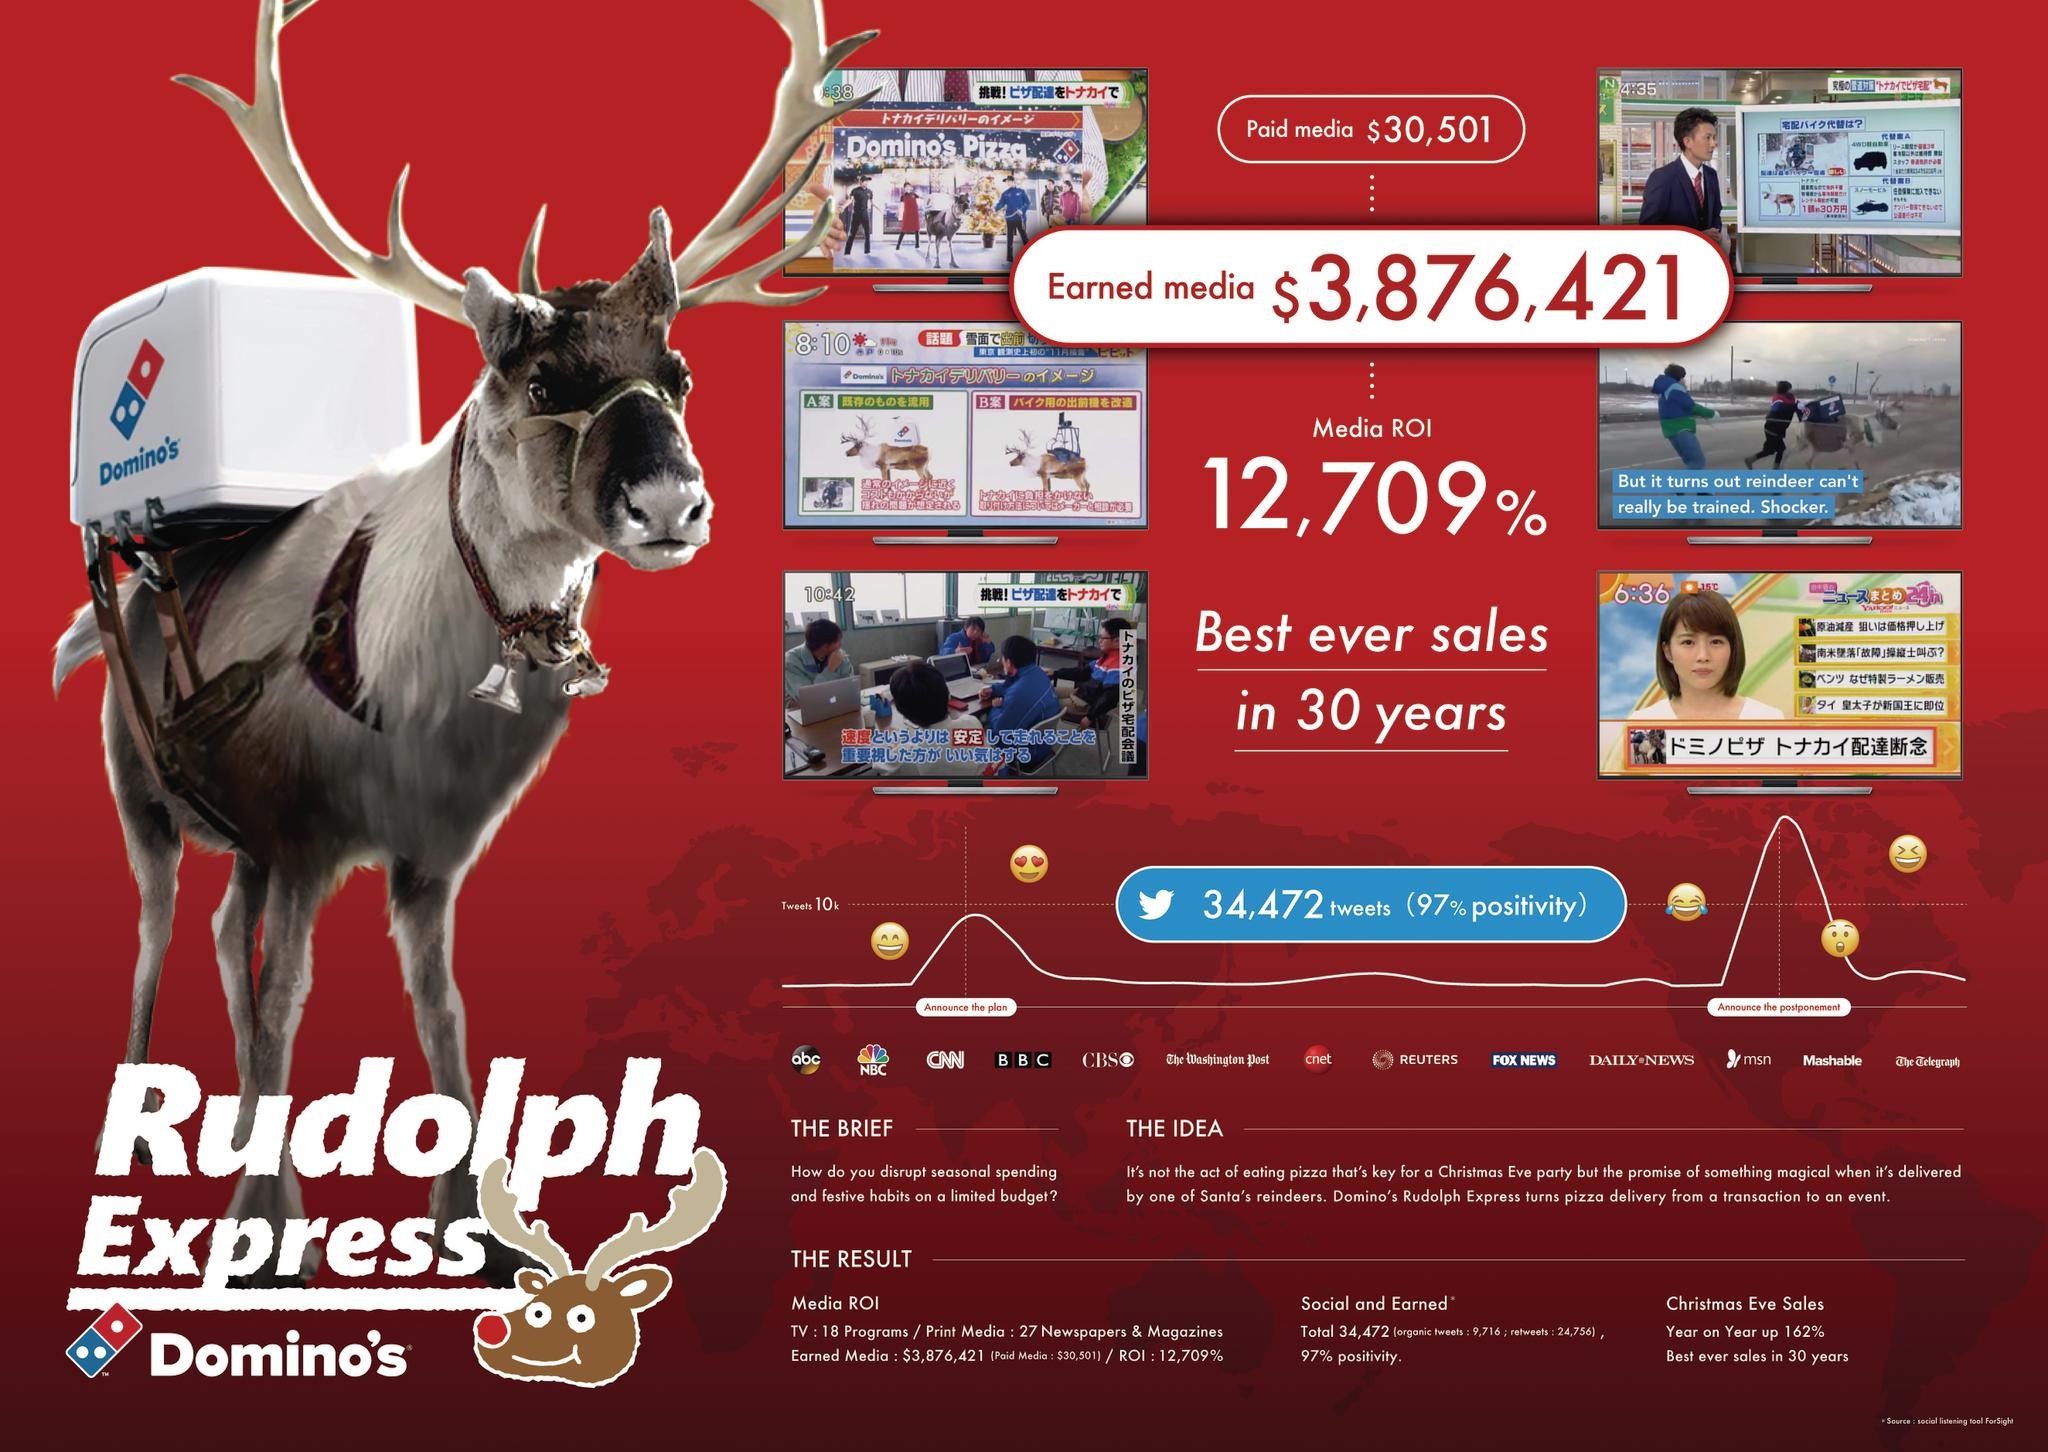 Rudolph Express